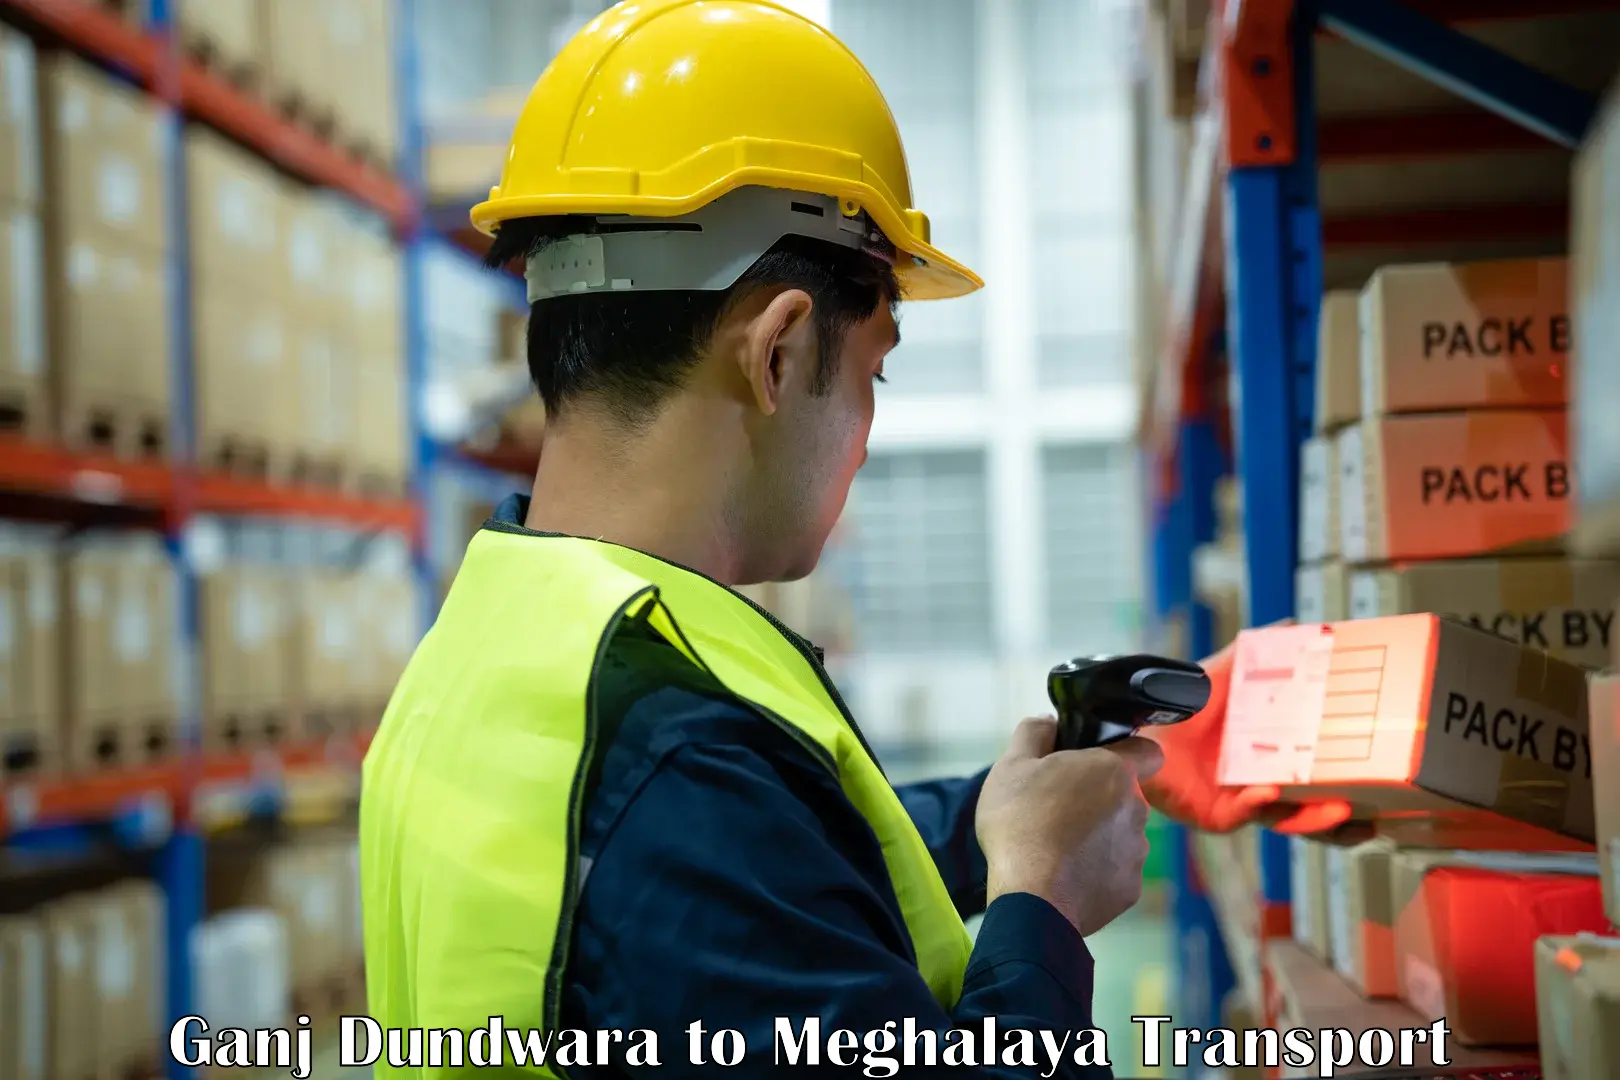 Online transport service Ganj Dundwara to Meghalaya